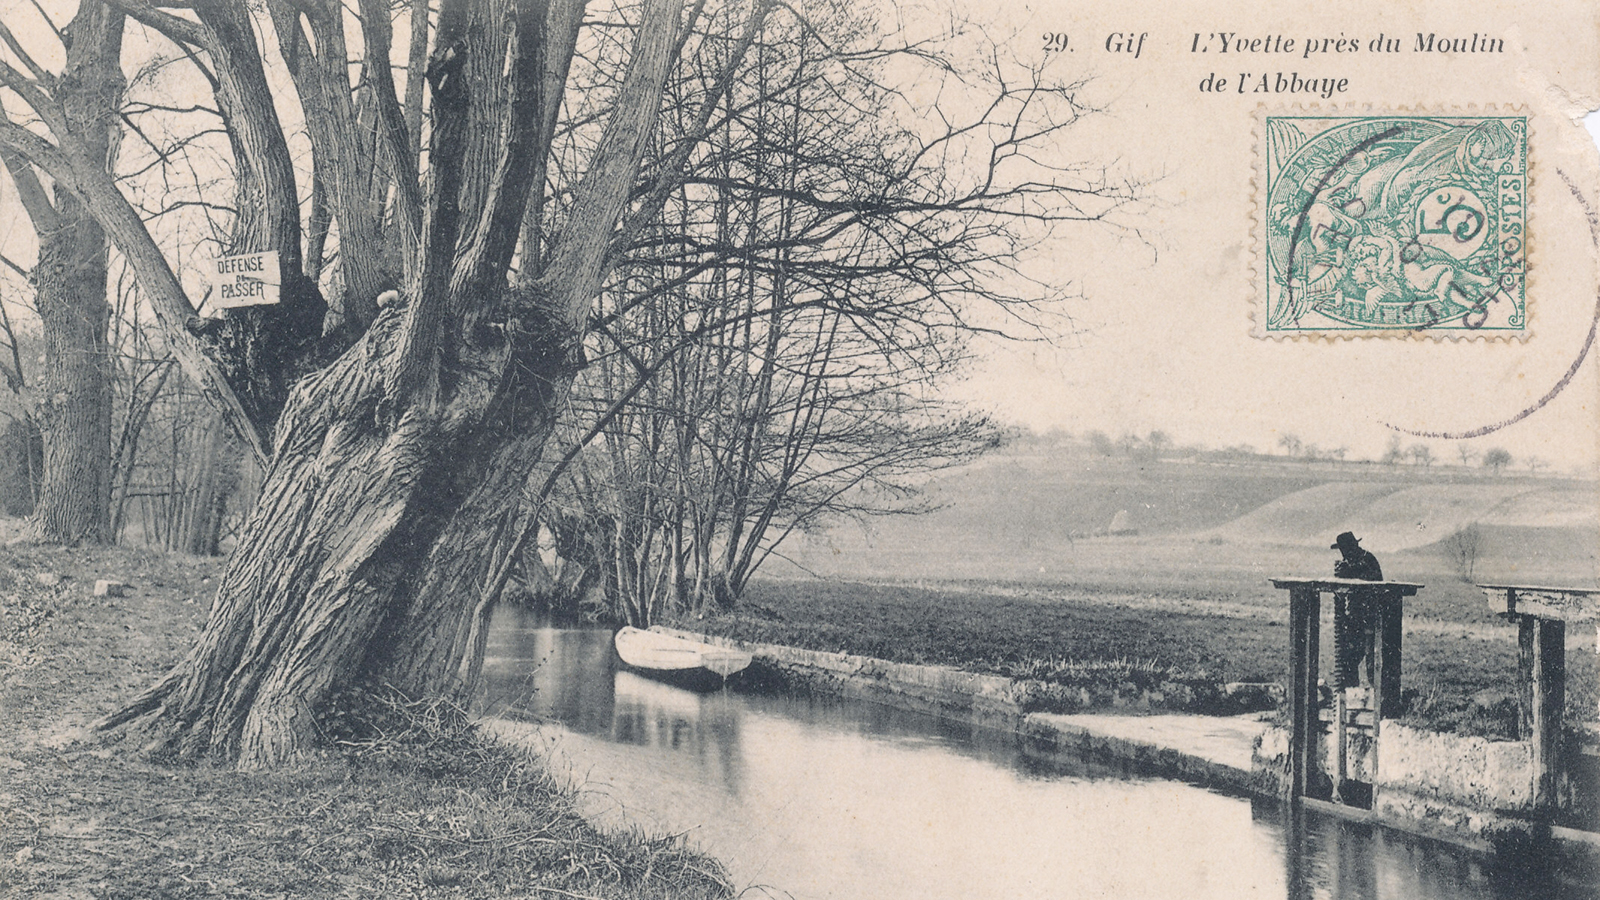 L'Yvette près du Moulin de l'Abbaye - Carte postale datée 1908